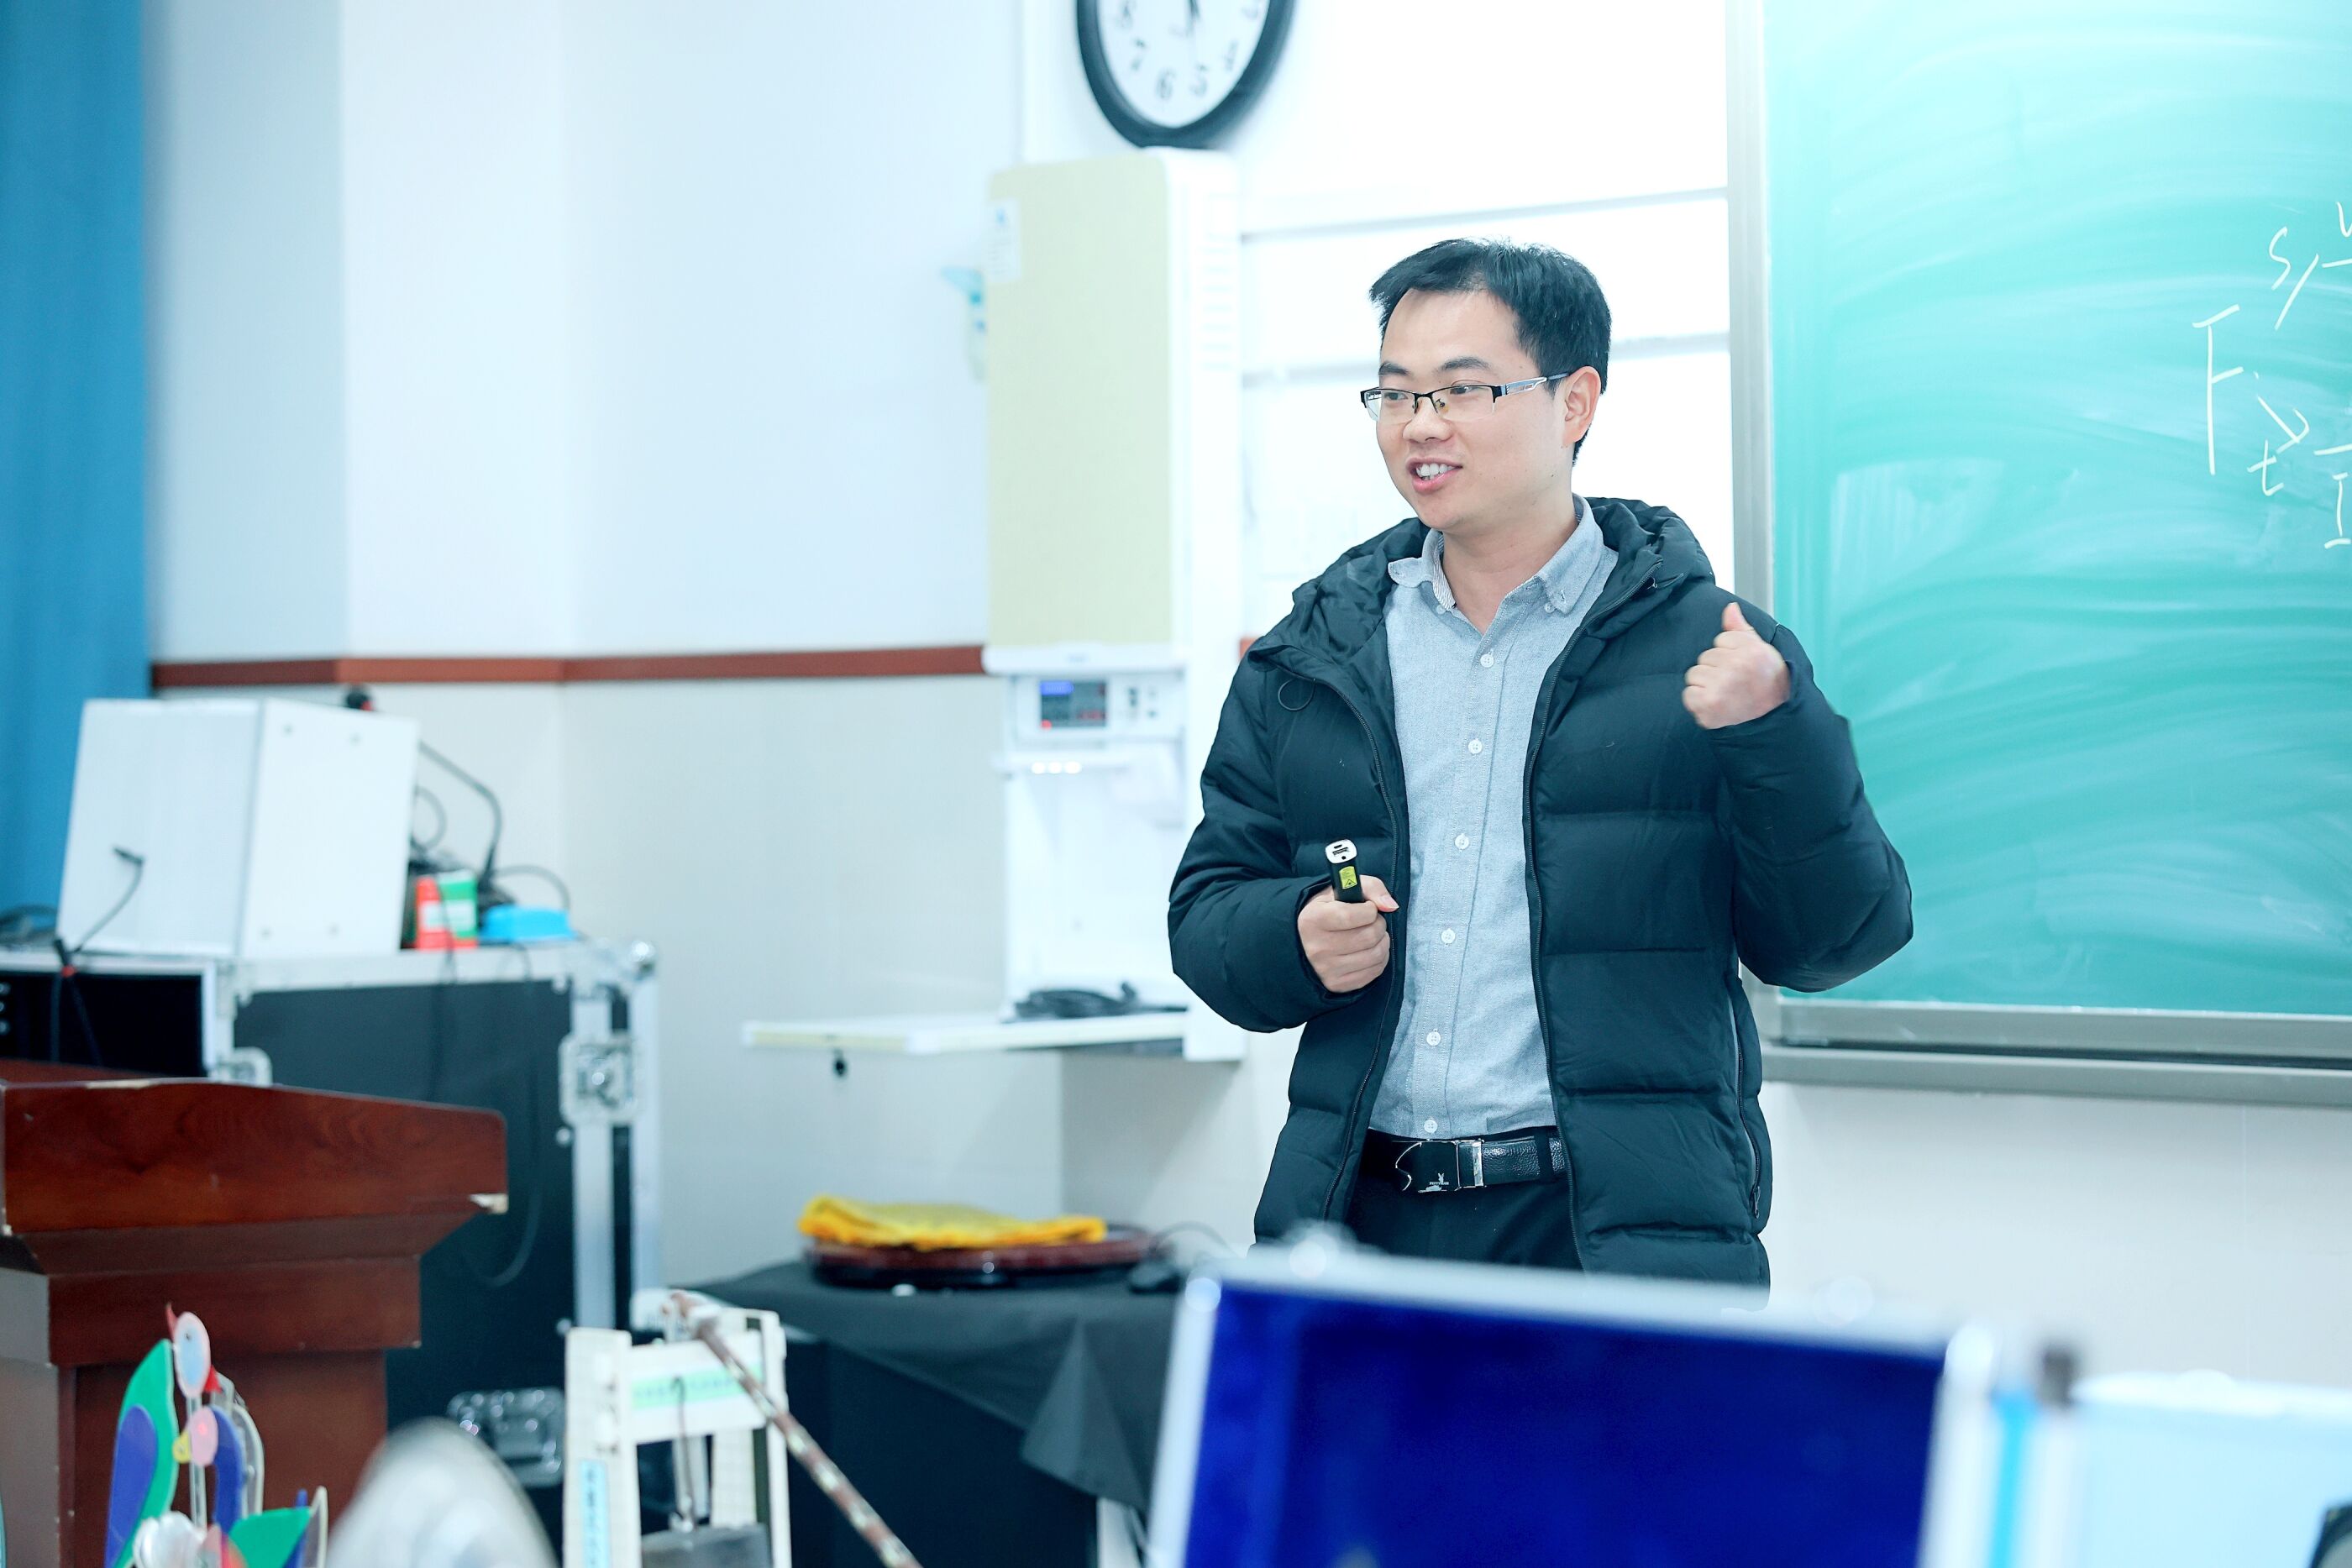 四川师范大学物理与电子工程学院高级实验师代珍兵评课